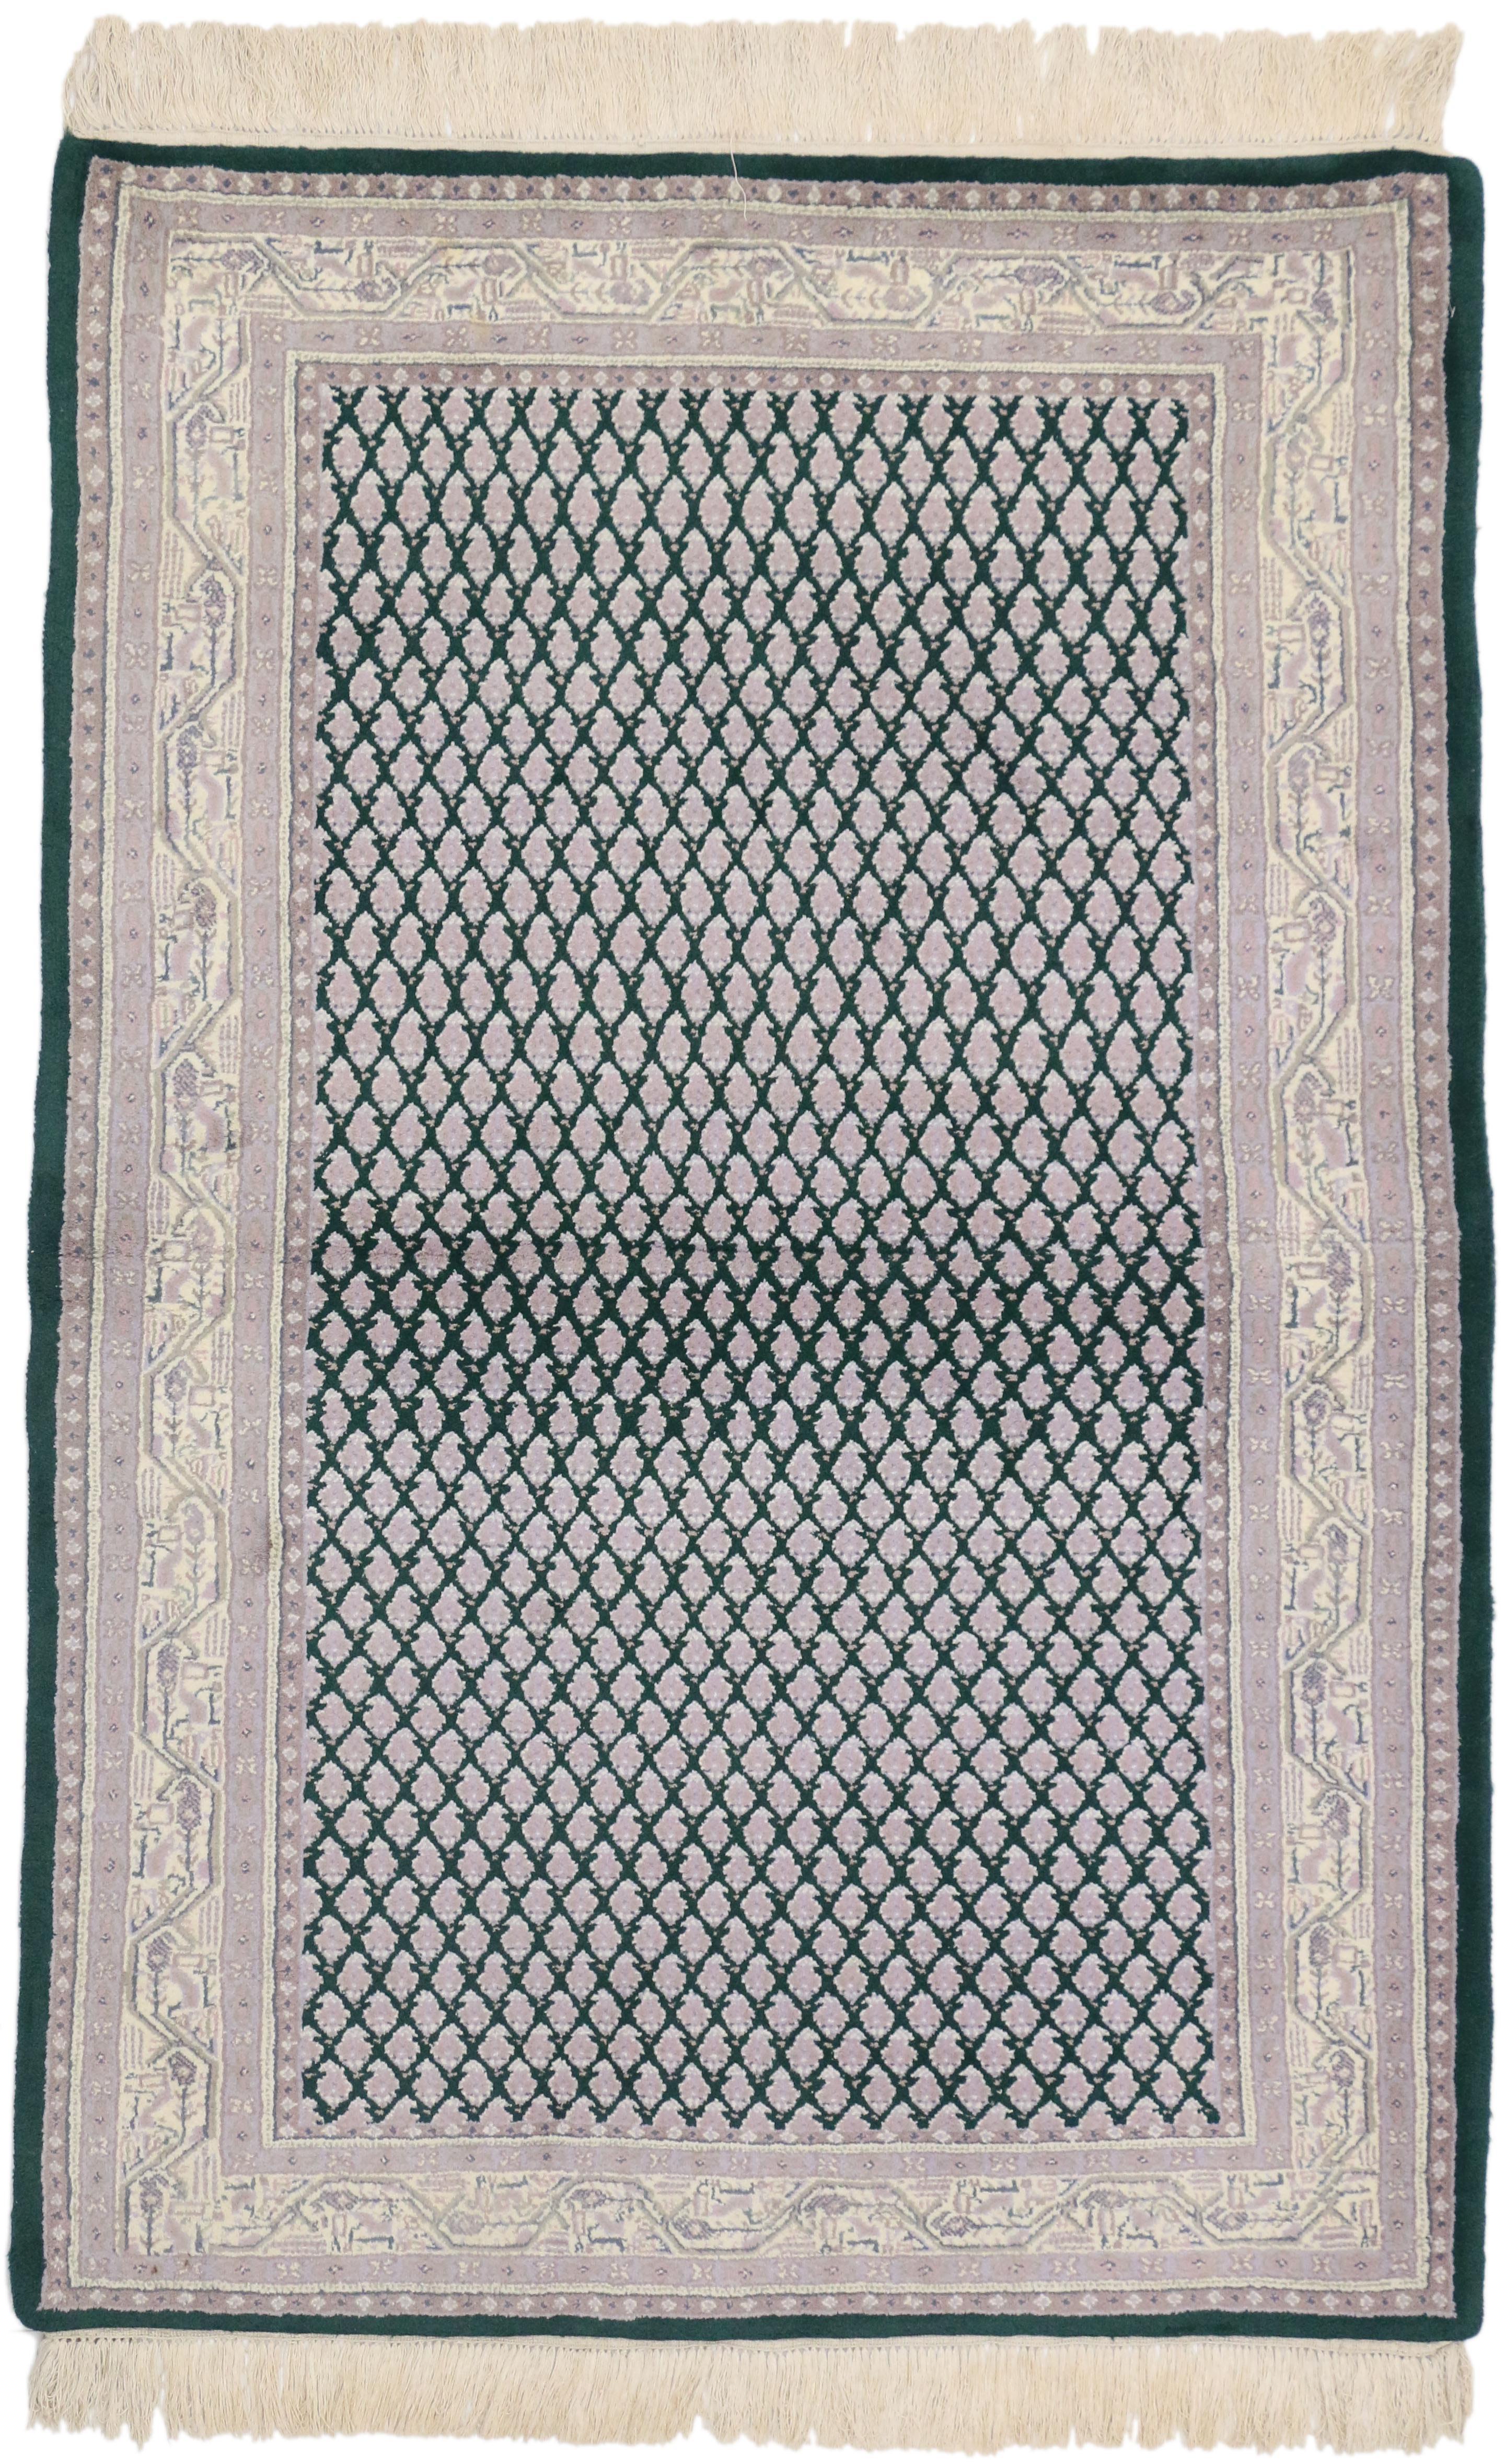 71912 Indischer Perserteppich im Vintage-Stil mit traditionellem Design. Dieser handgeknüpfte Wollteppich im persischen Stil zeigt ein kleinteiliges Mir Boteh-Muster, das sich über ein abgewetztes flaschengrünes Feld erstreckt. Das weit verbreitete